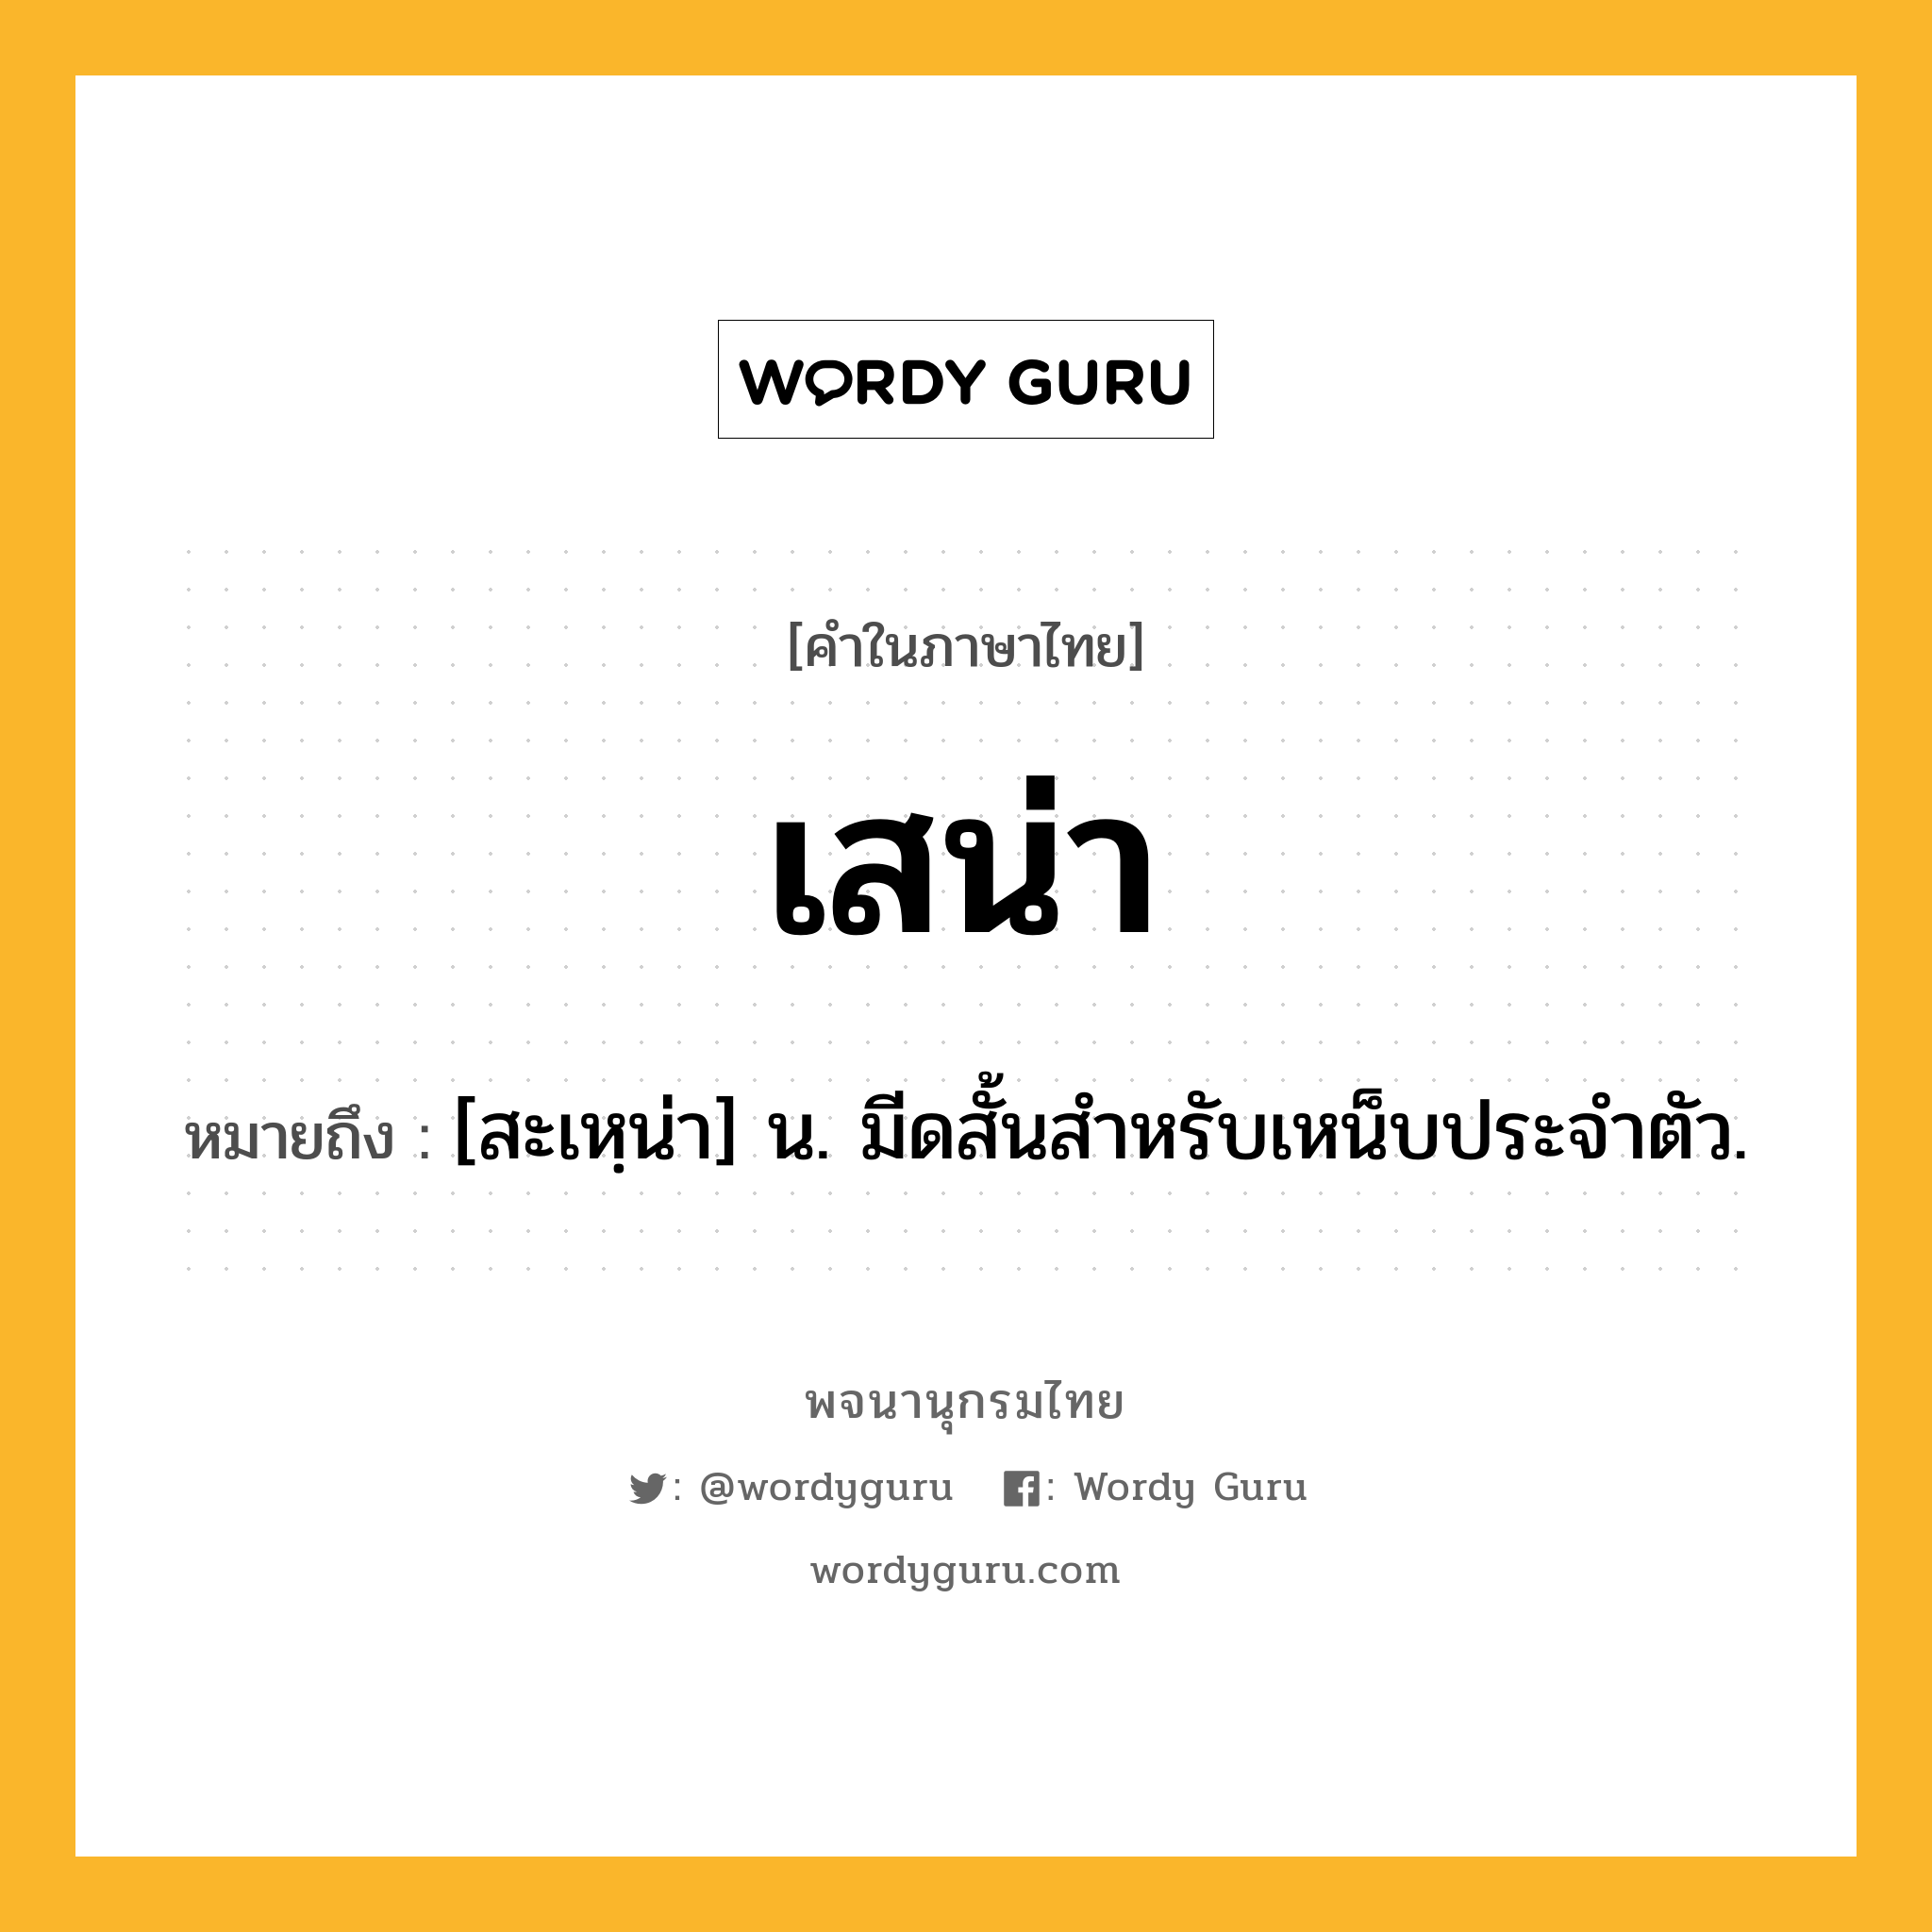 เสน่า ความหมาย หมายถึงอะไร?, คำในภาษาไทย เสน่า หมายถึง [สะเหฺน่า] น. มีดสั้นสำหรับเหน็บประจำตัว.